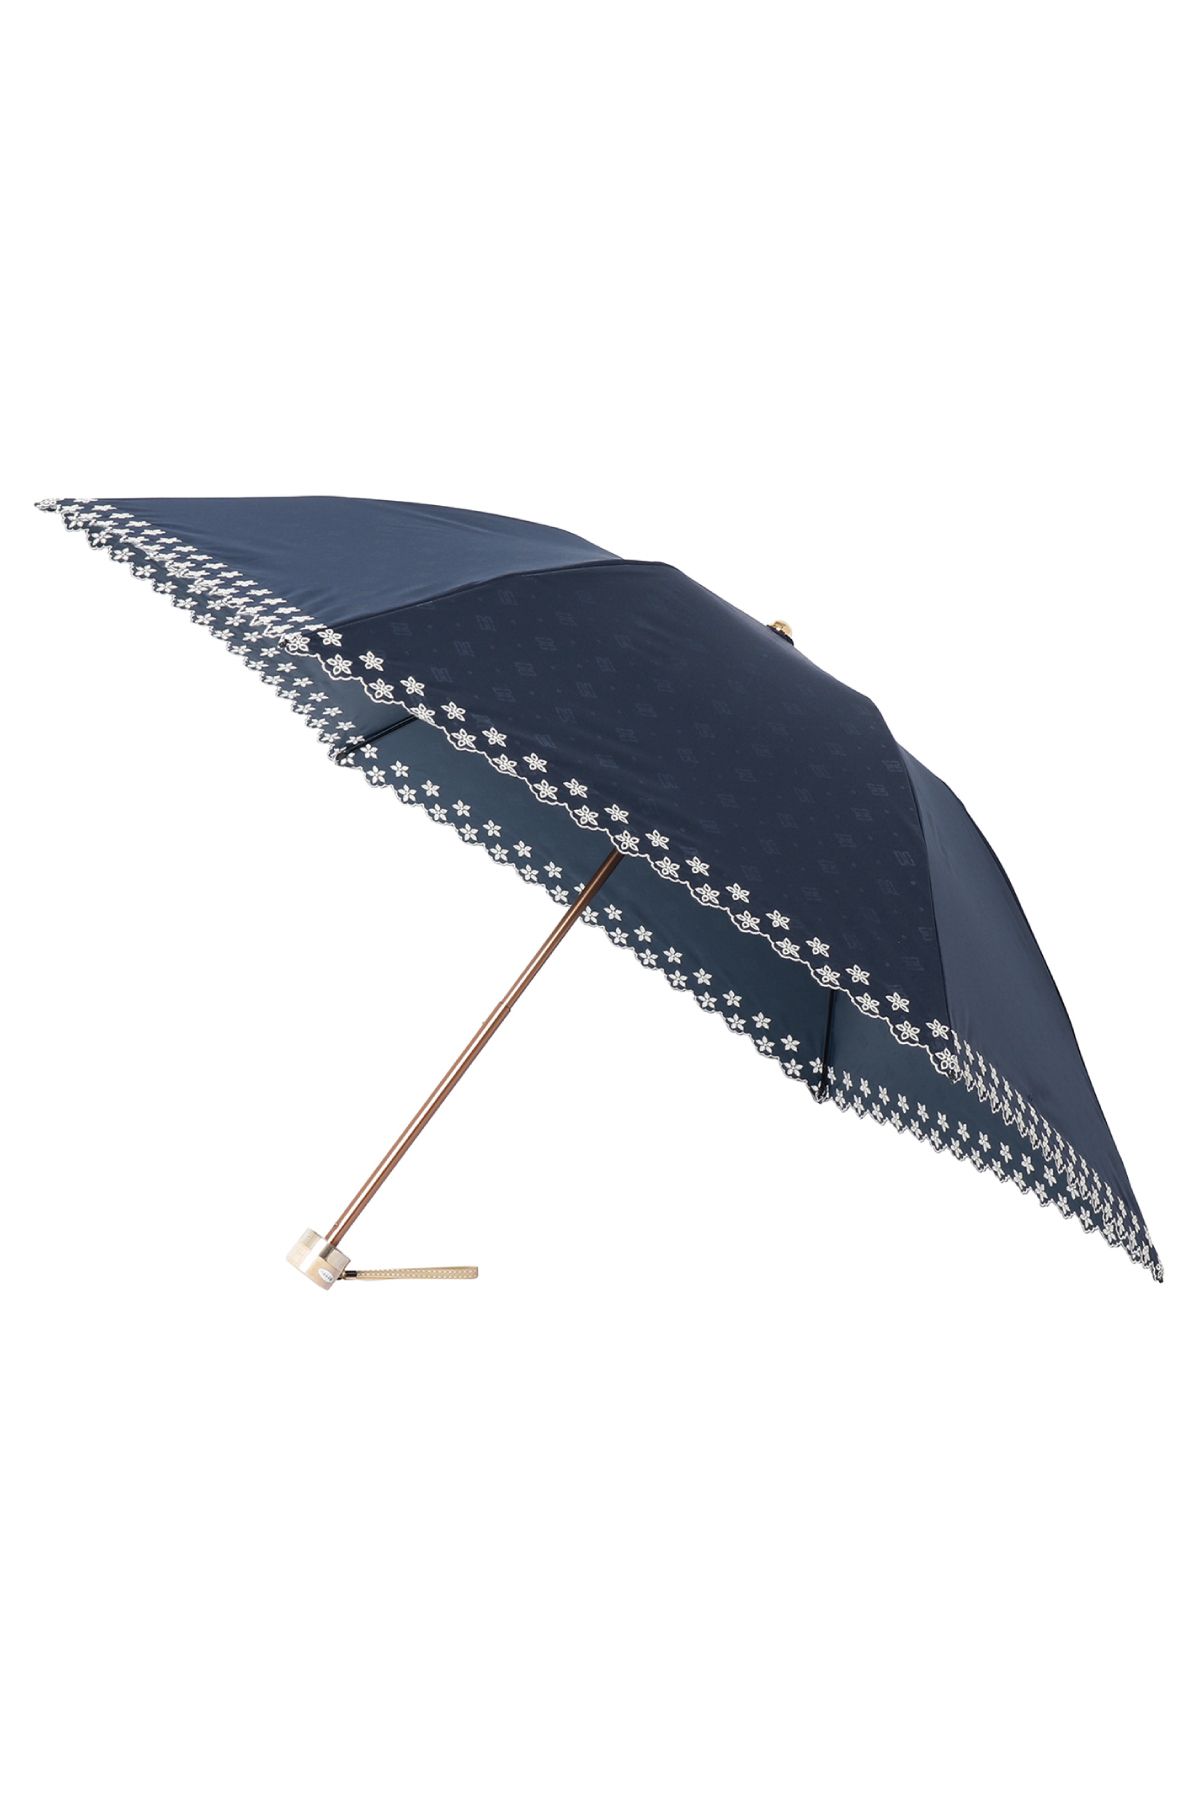 【日傘】ミニ折りたたみ傘ドットジャカード刺繍 詳細画像 74/ネイビー 2